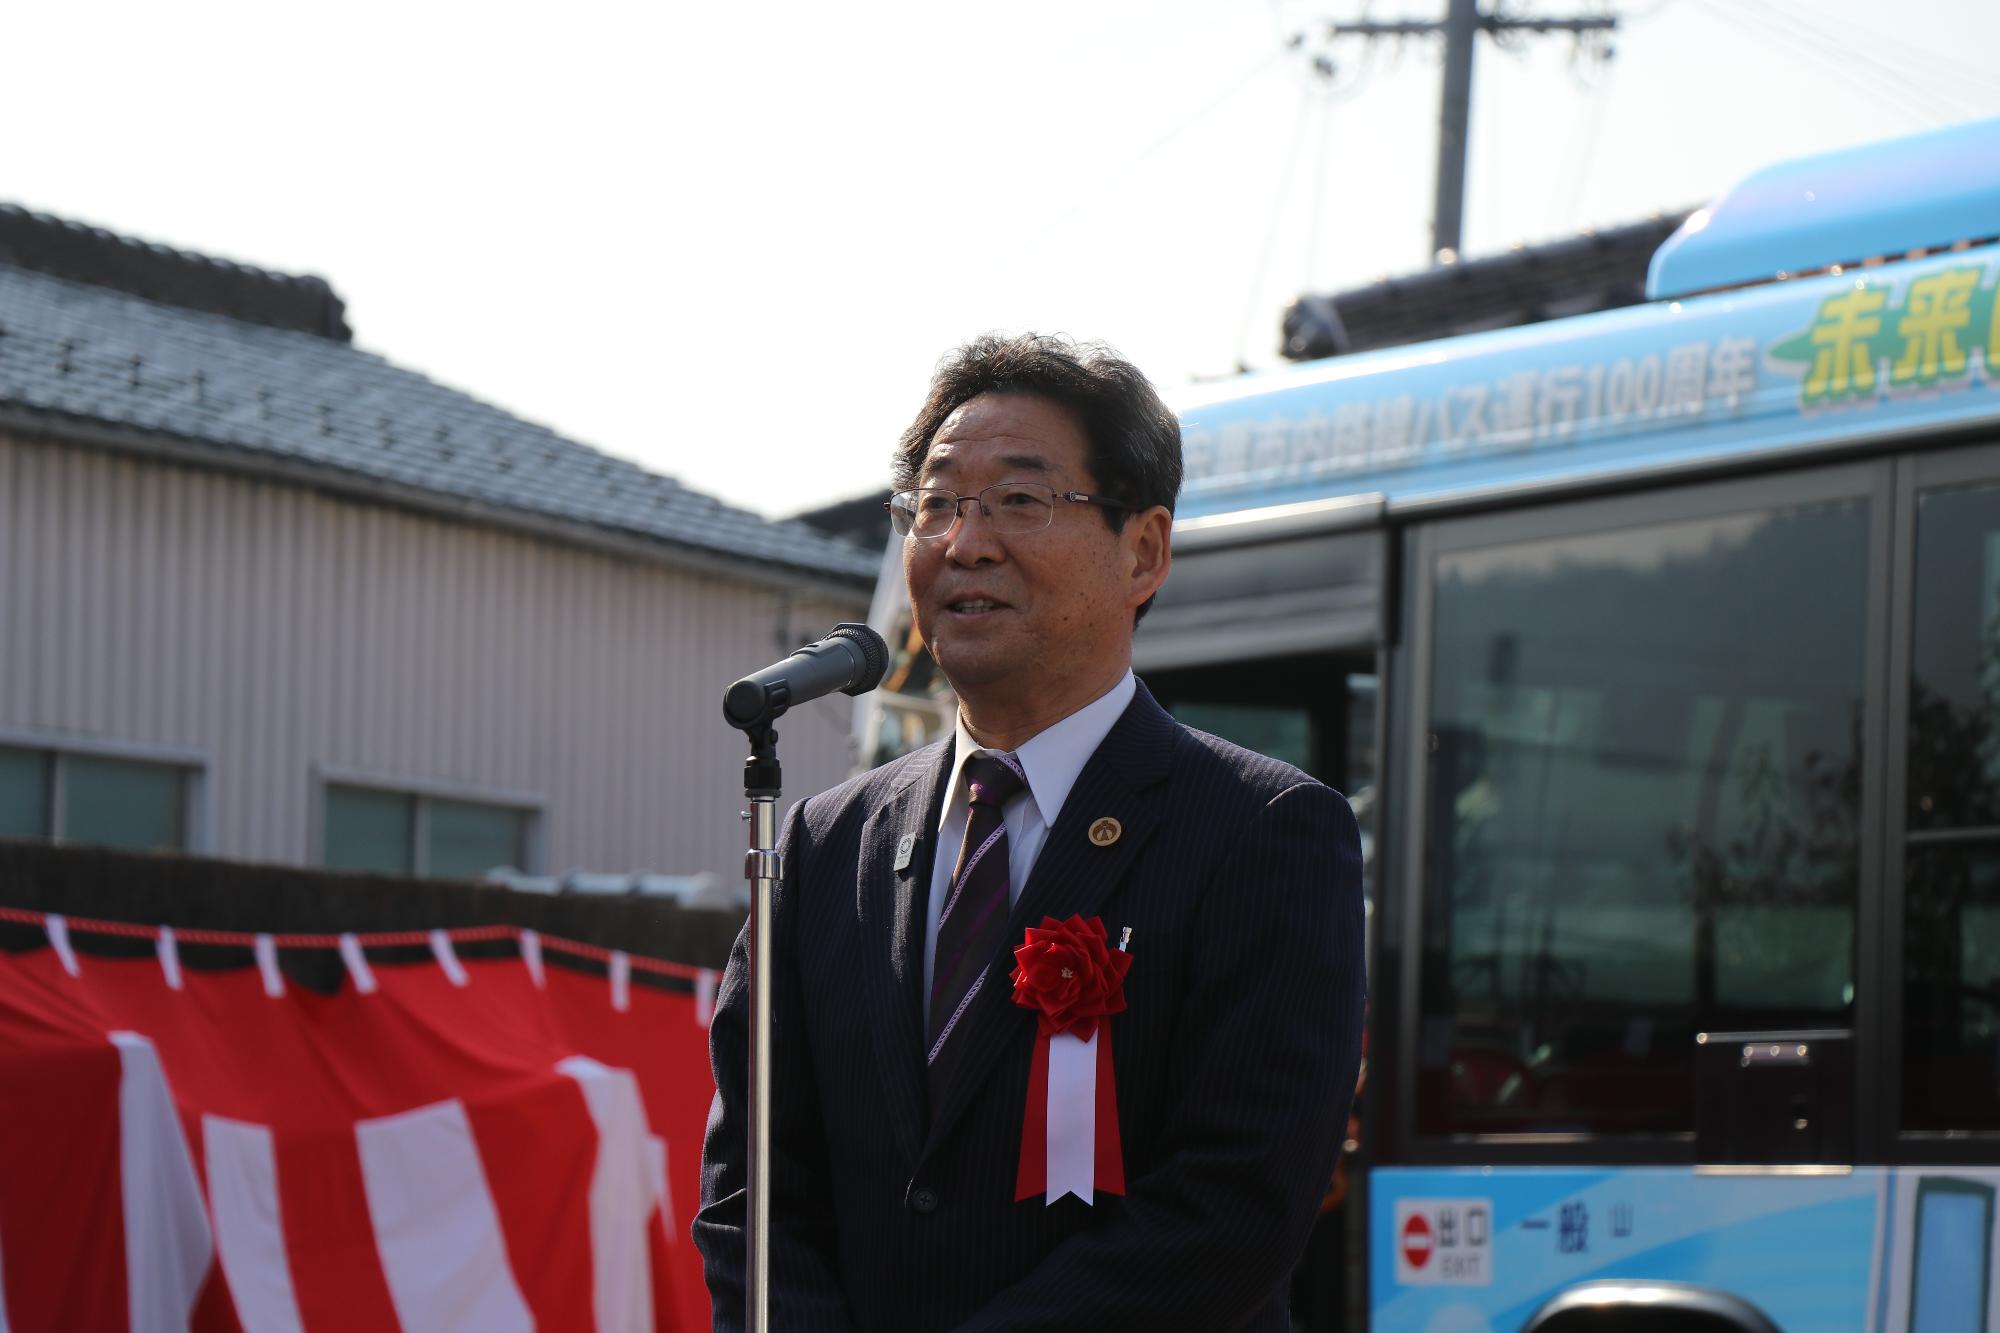 水色のバス運行100周年記念バスの前でスピーチを行う市長の写真